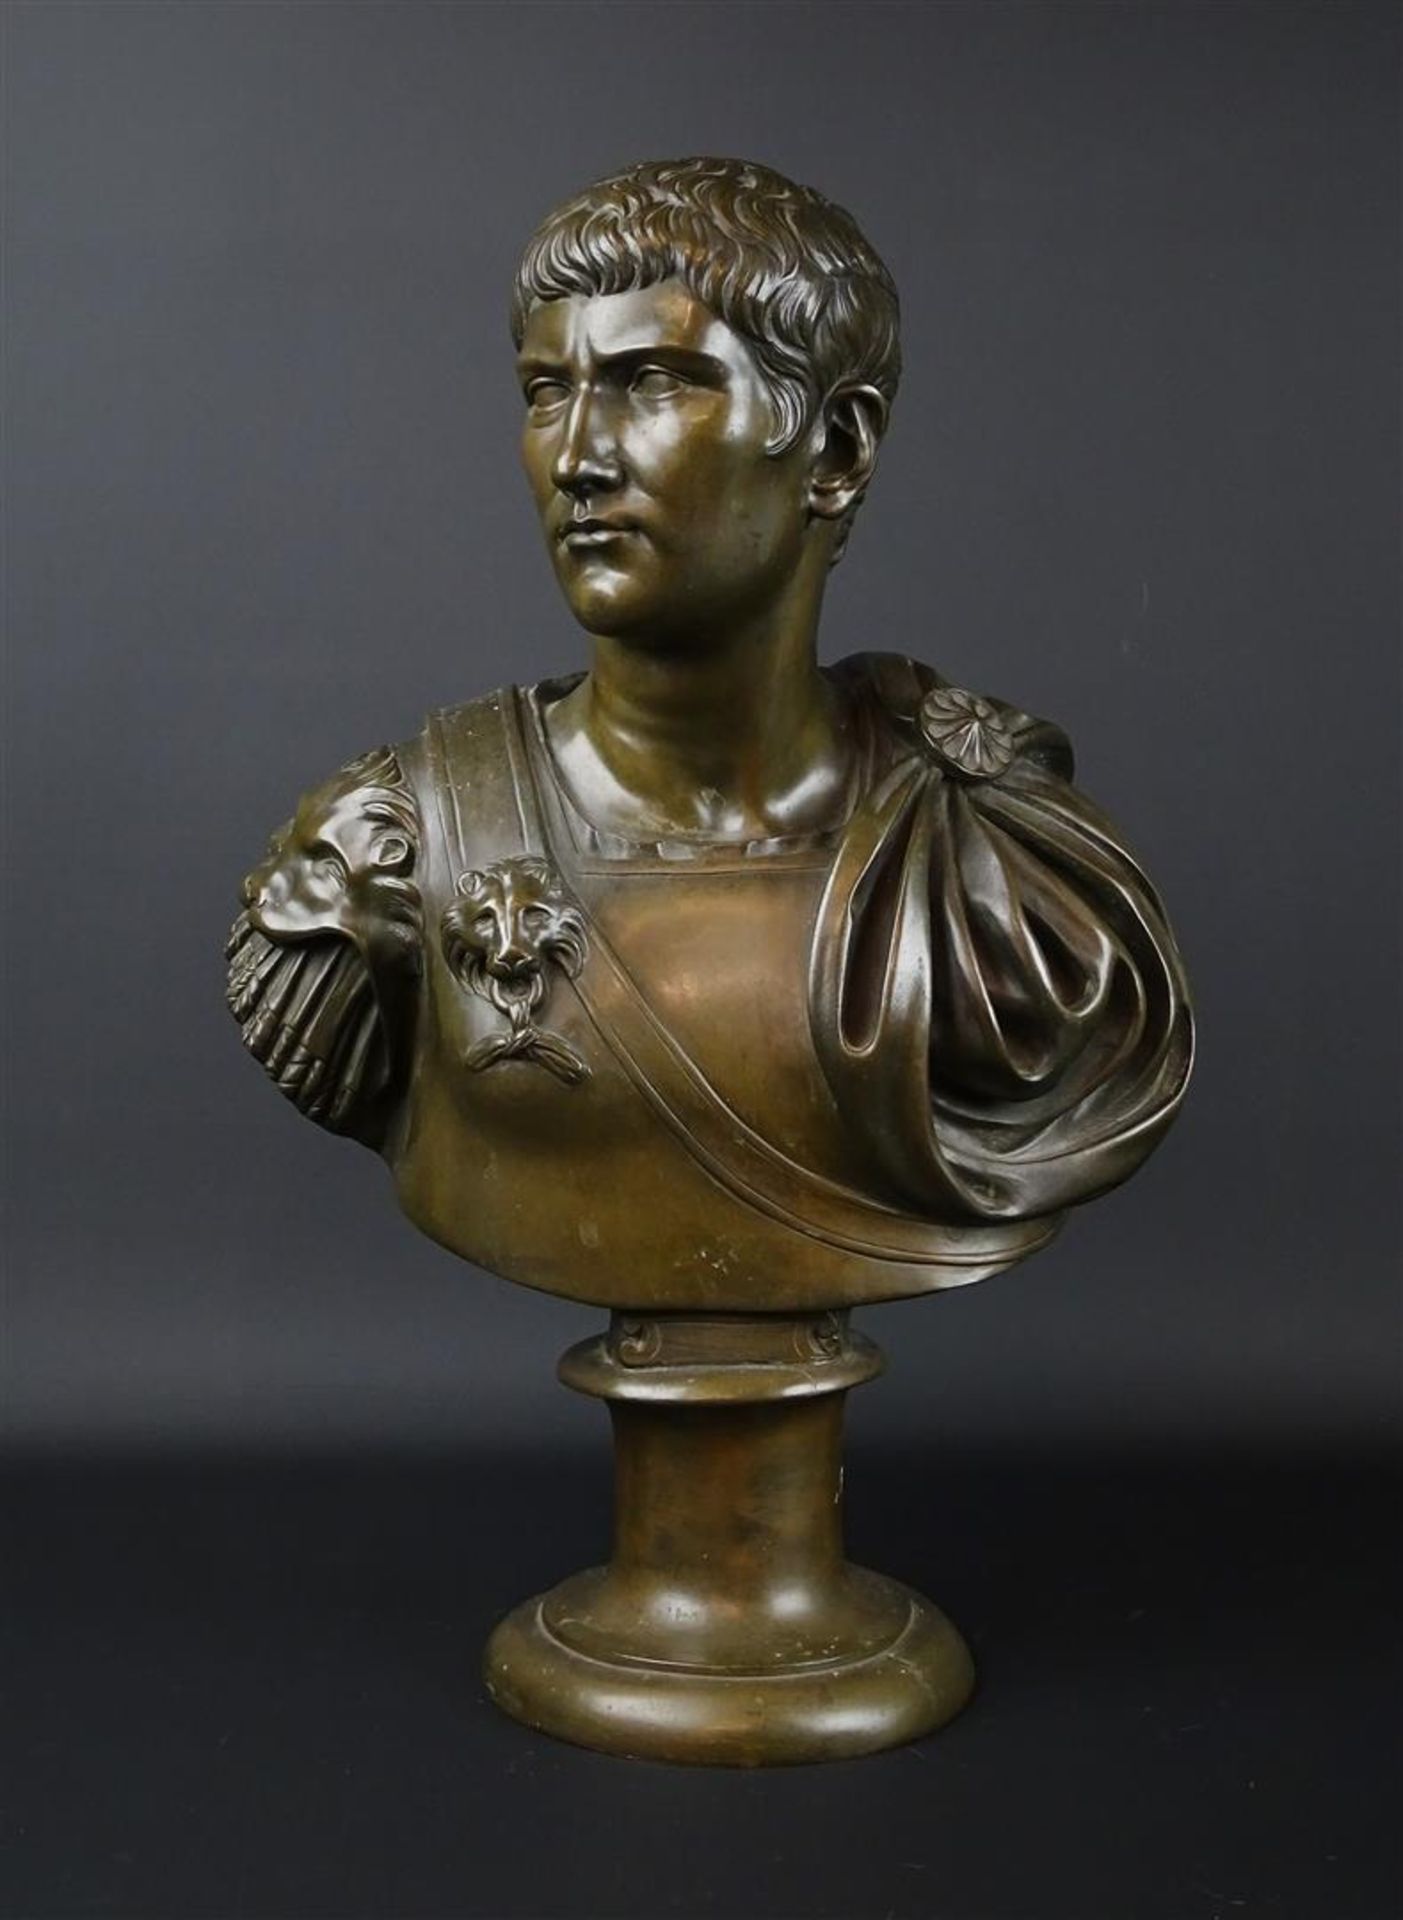 bronzen buste met voorstelling van een Romeinse keizer op ronde voet, niet gesigneerd, h. 47 cm.